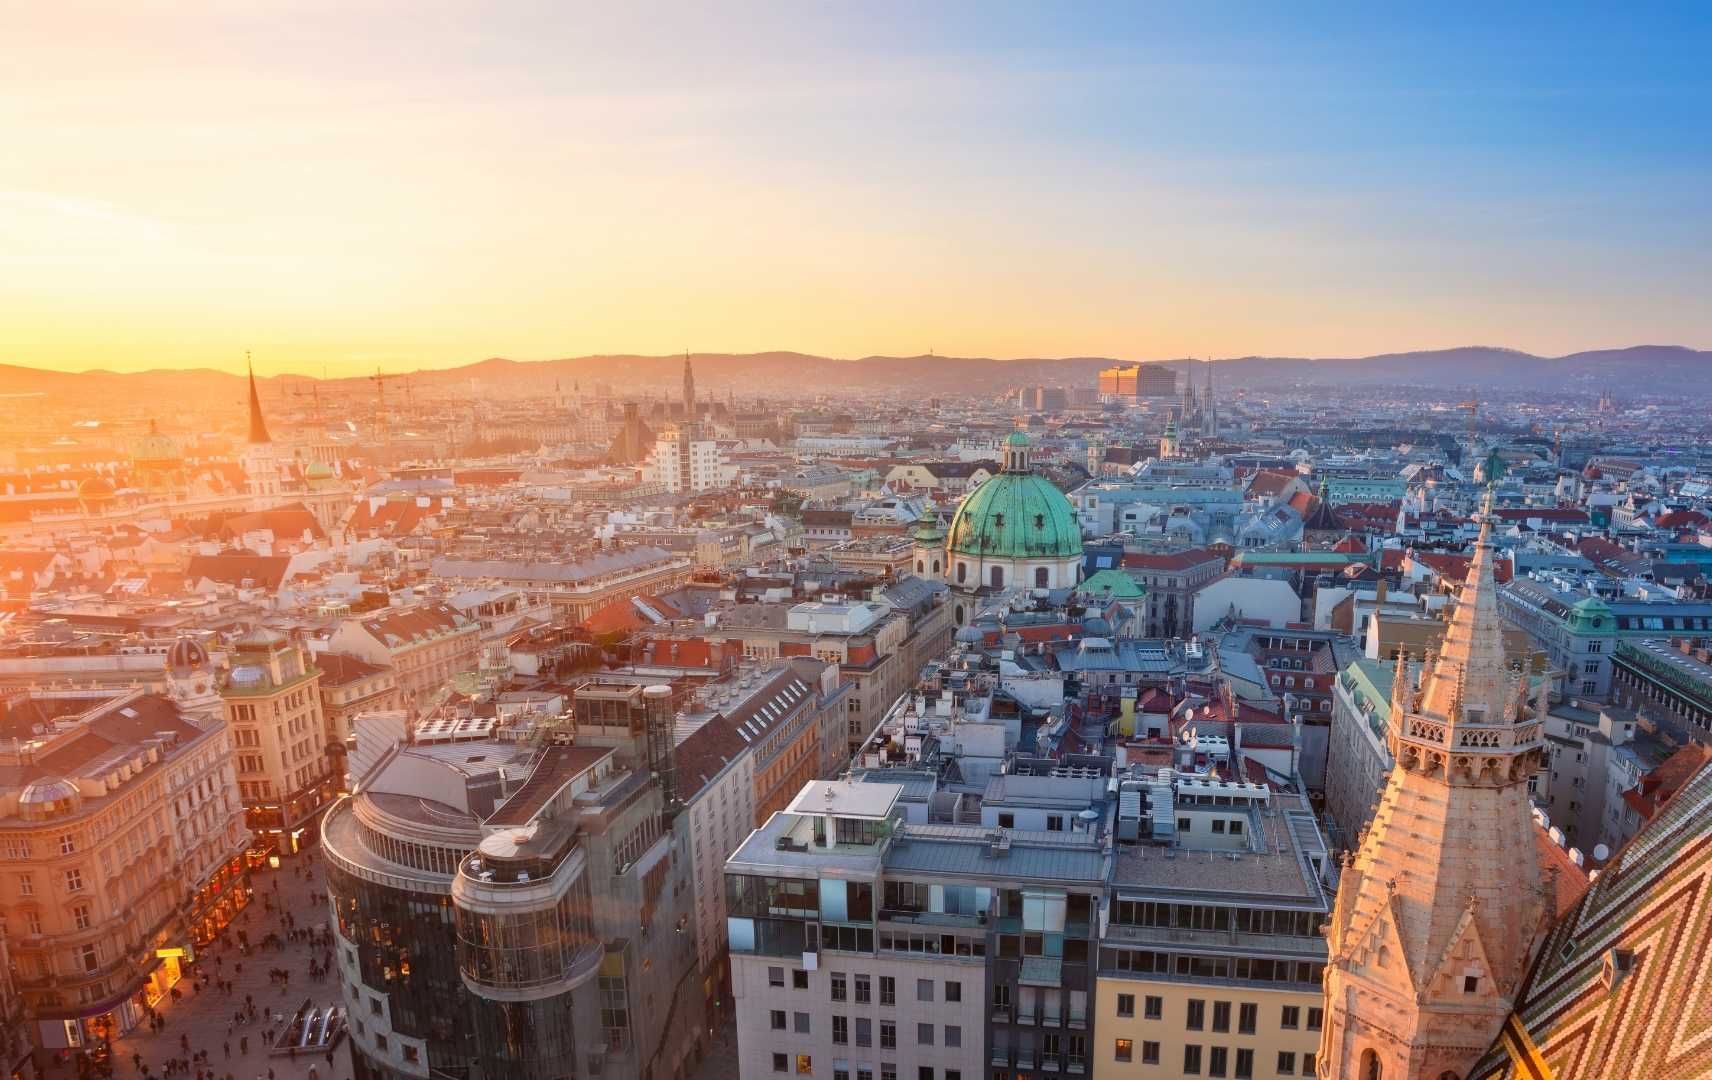 Wien im Sonnenuntergang: Blick auf die Stadt